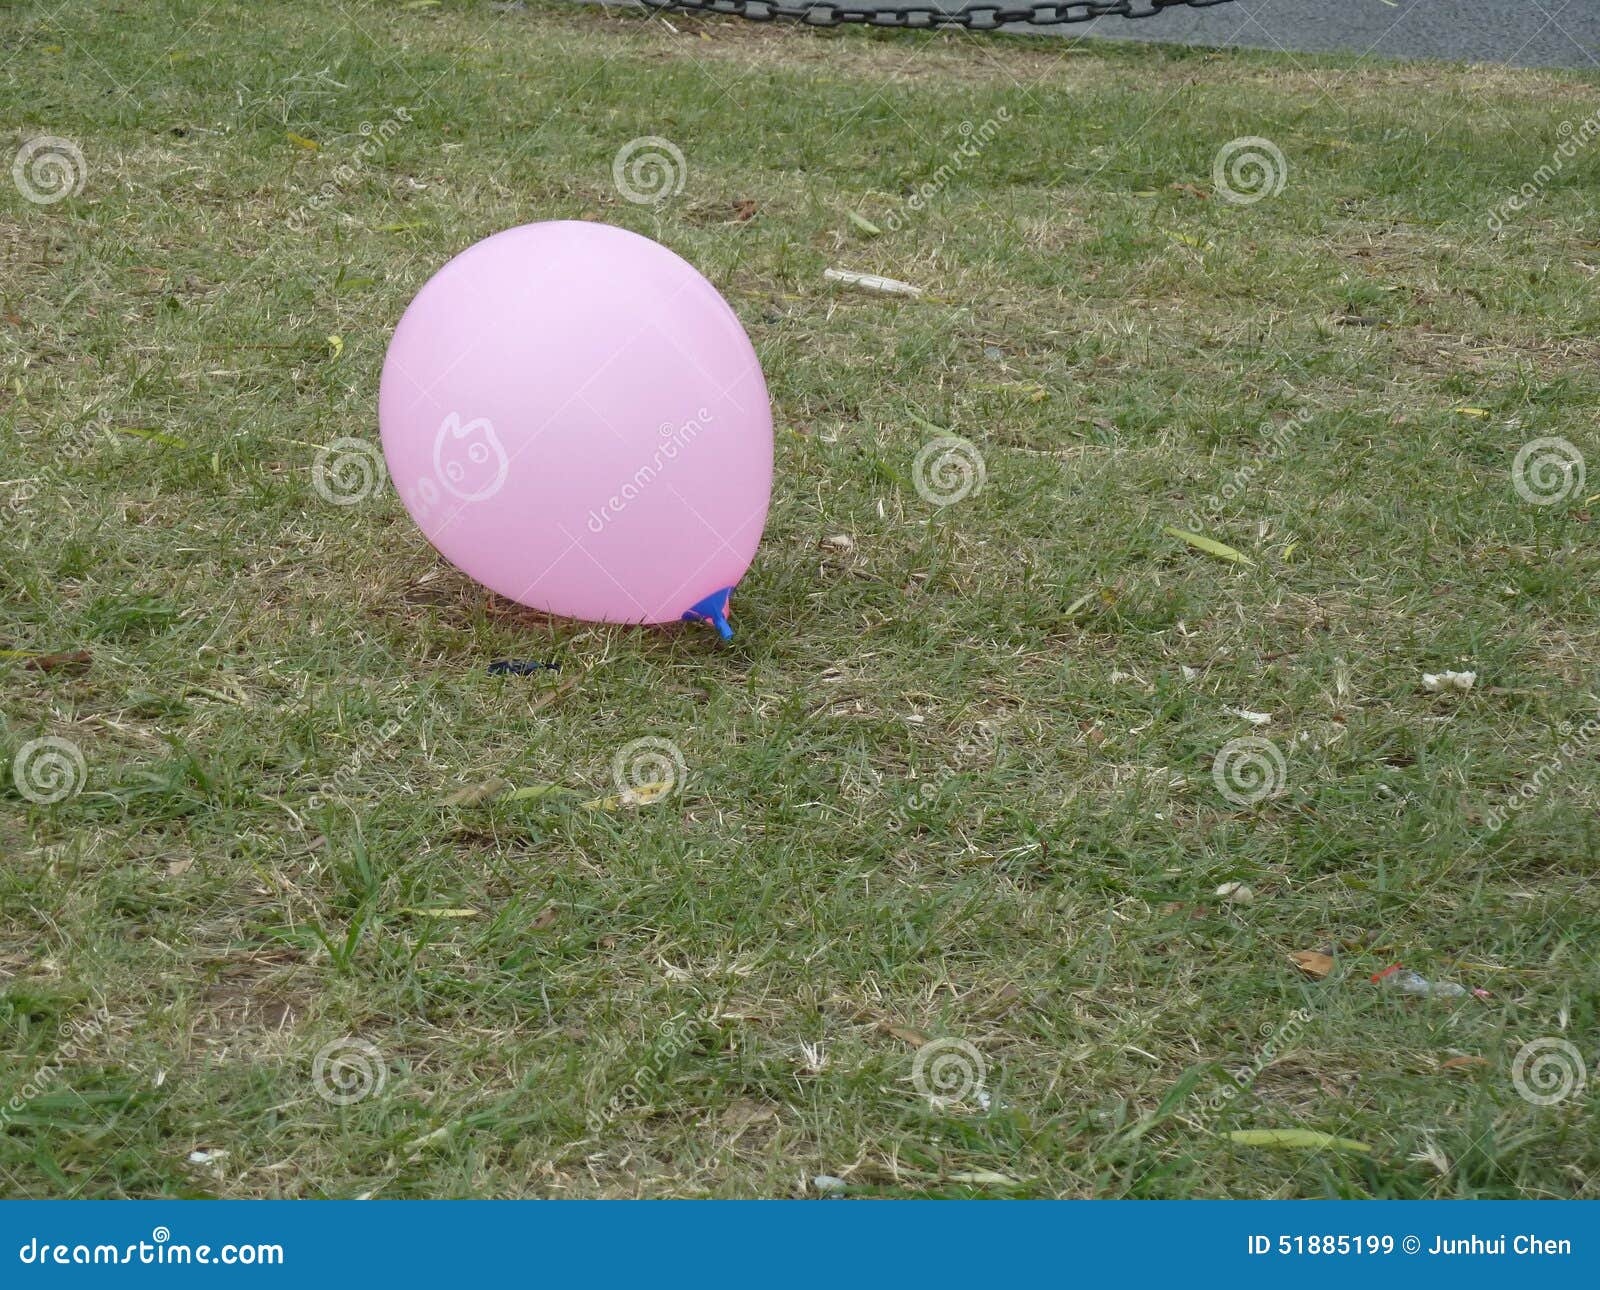 purple airballoon